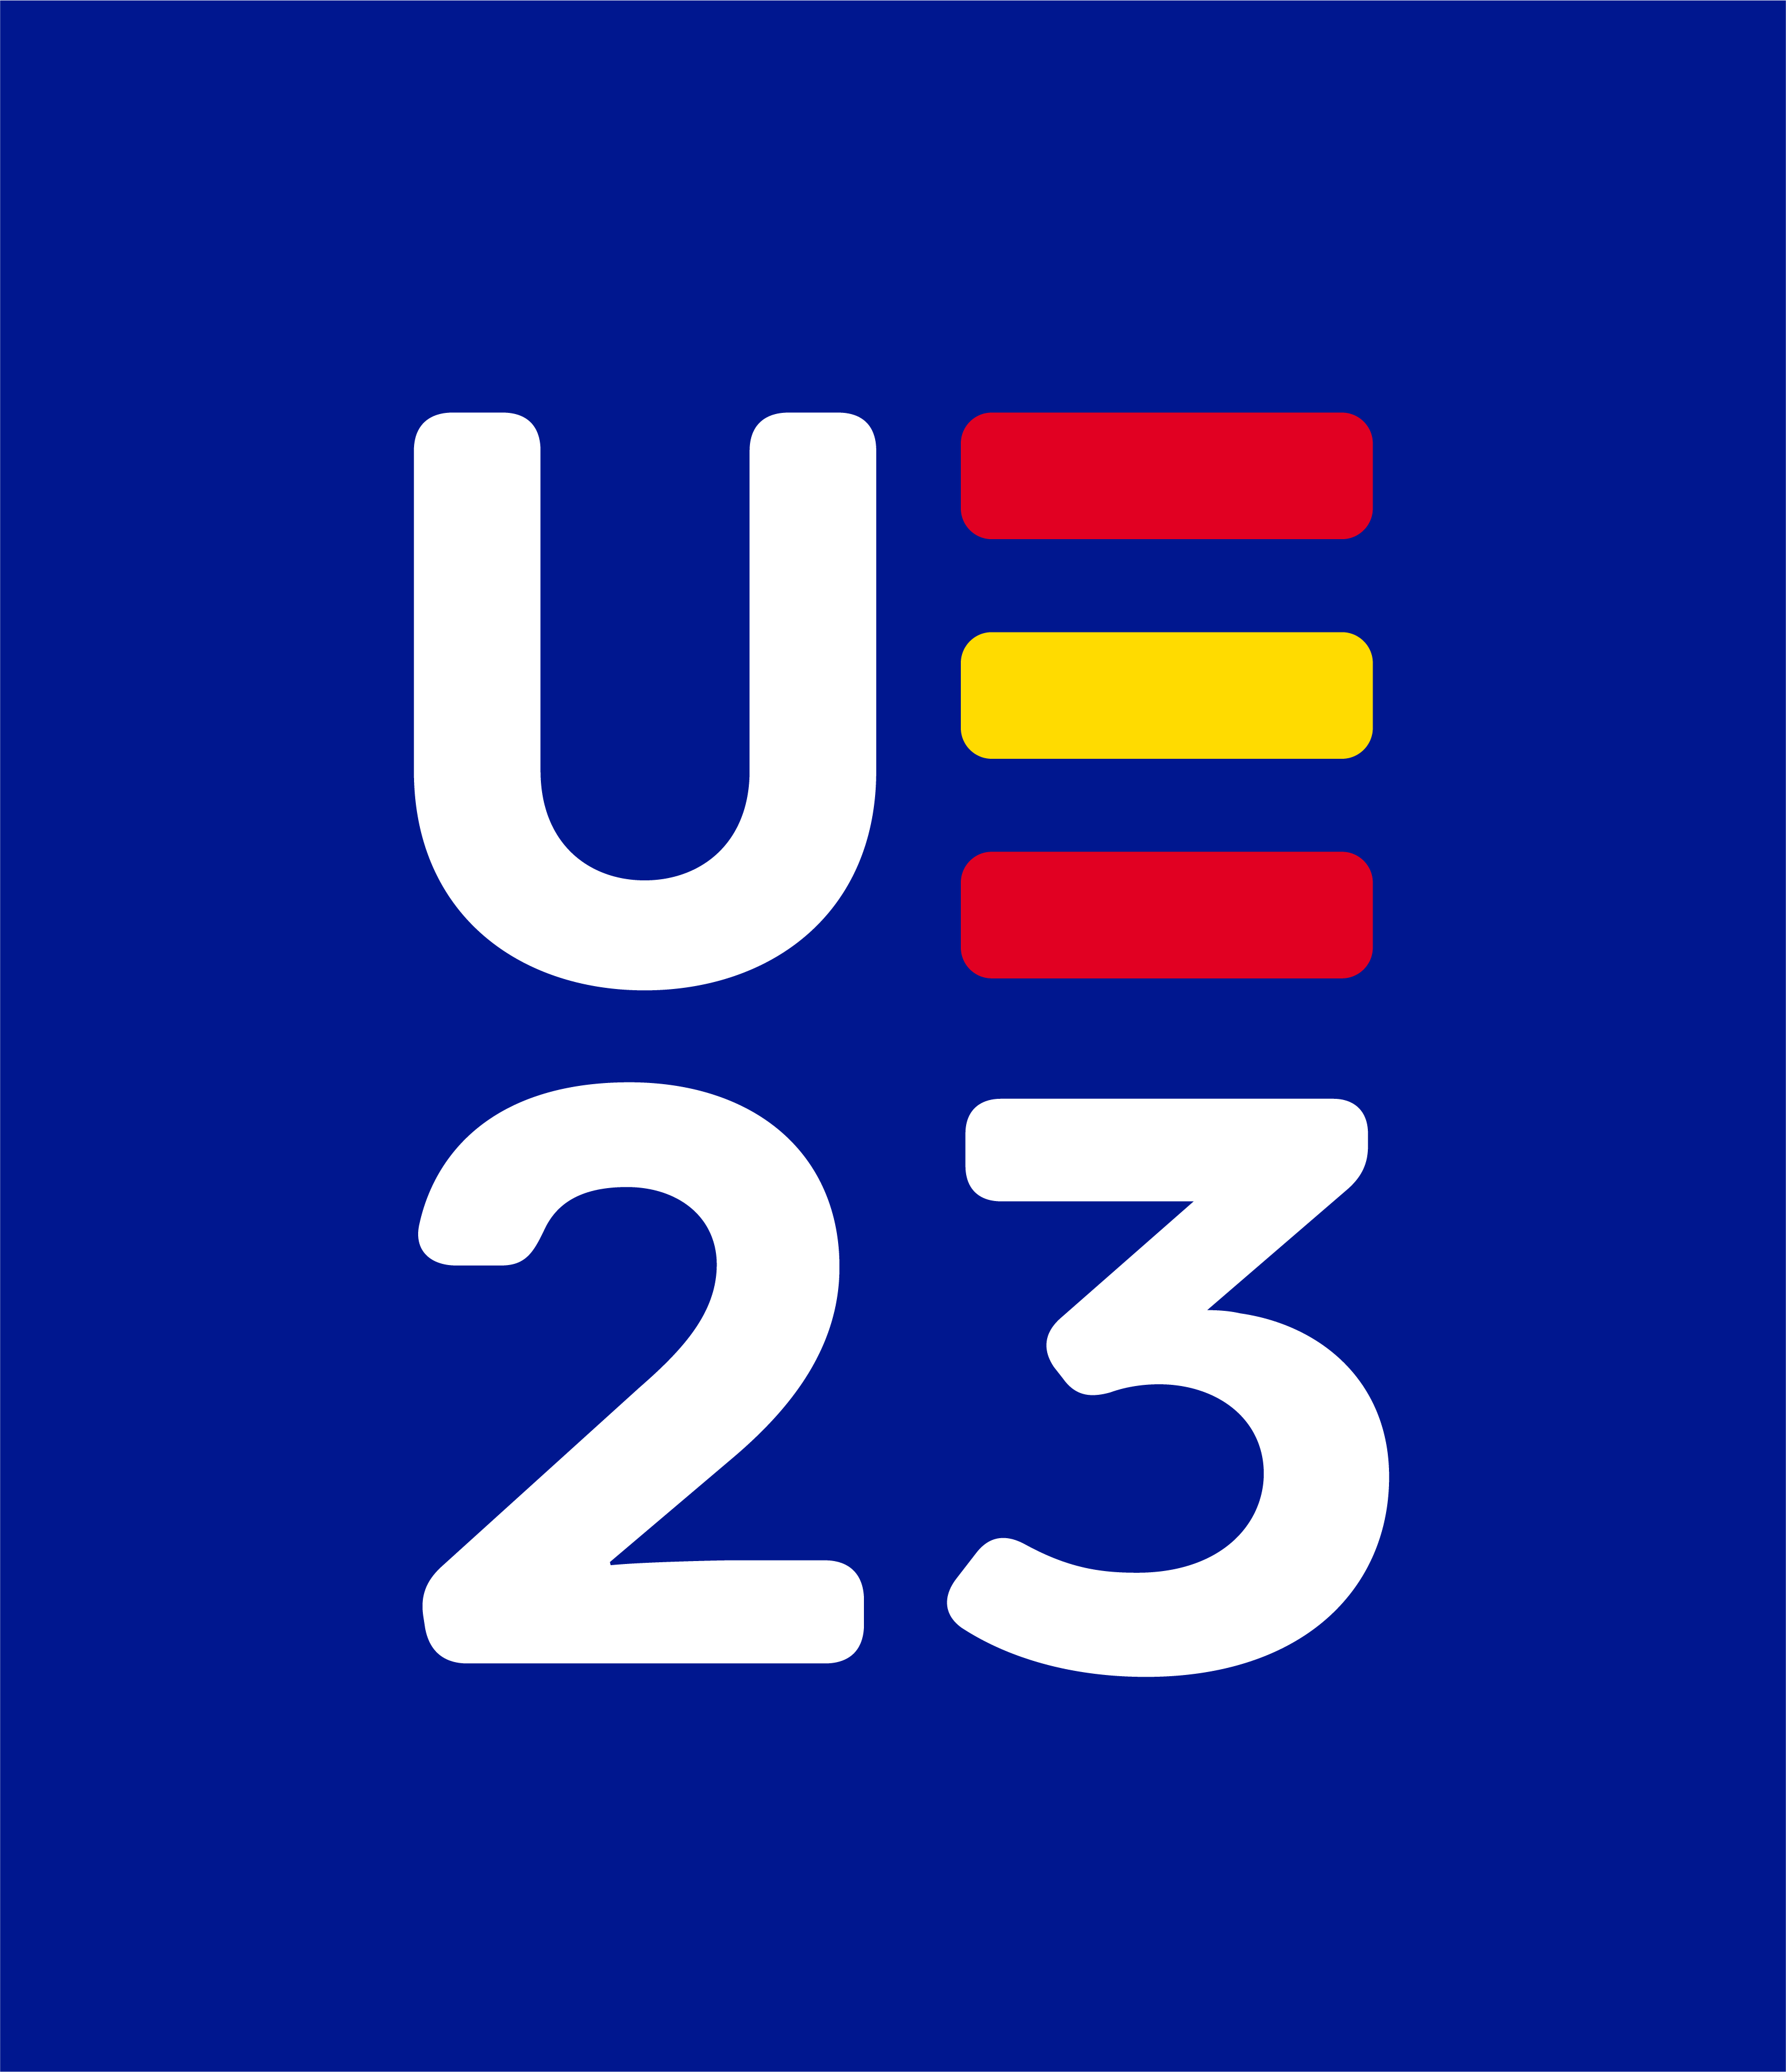 Presidencia española Unión Europea 2023